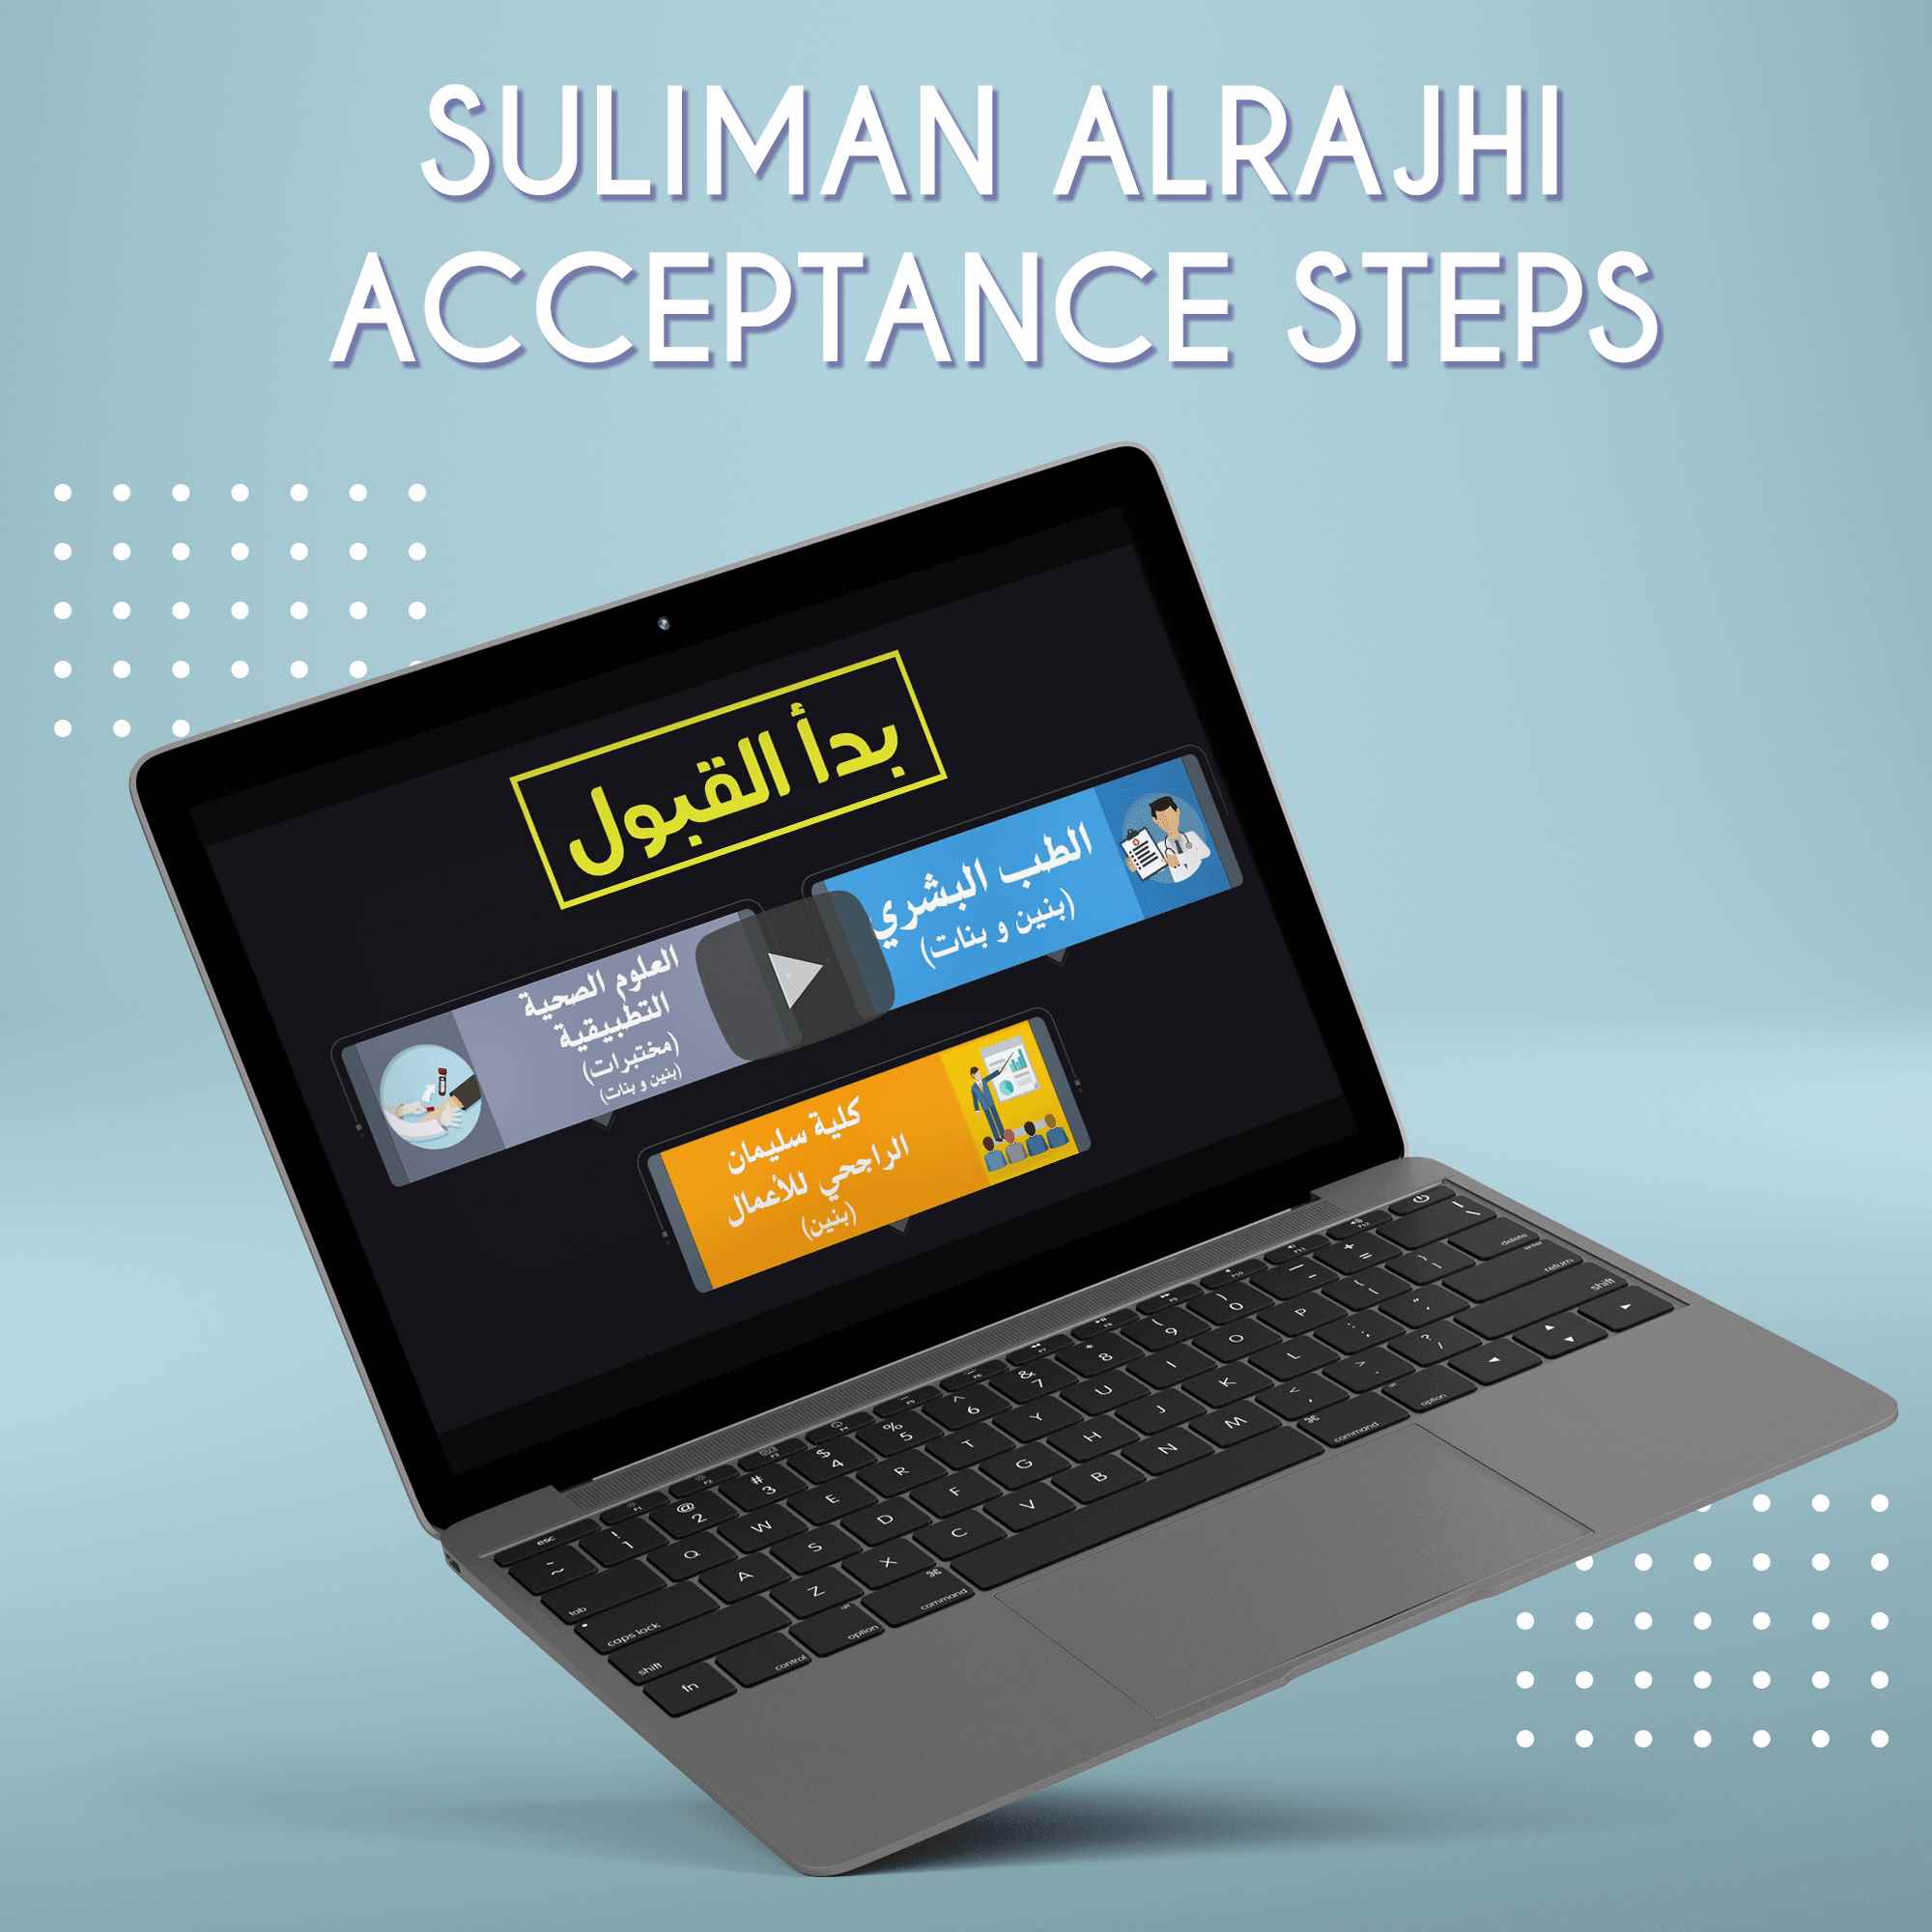 Suliman Alrajhi acceptance steps